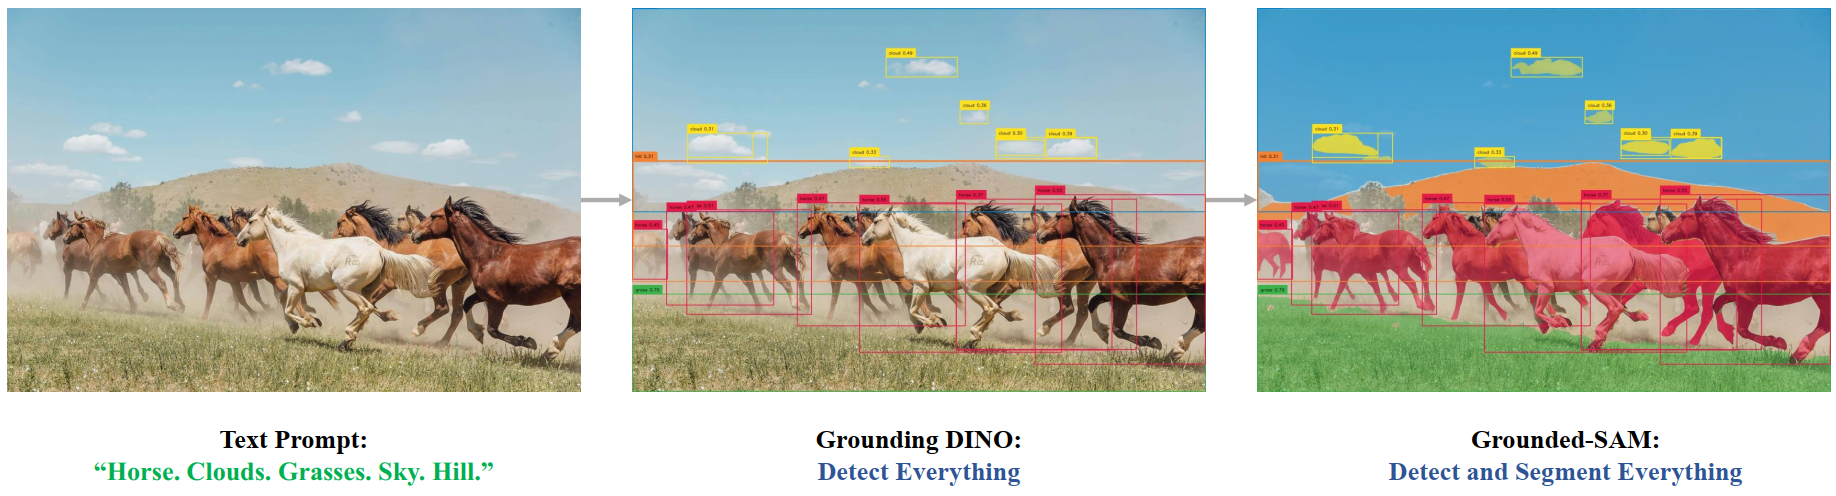 【计算机视觉 | 目标检测 | 图像分割】Grounded Segment Anything：Grounding DINO + Segment Anything Model (SAM)介绍_Grounding DINO_02